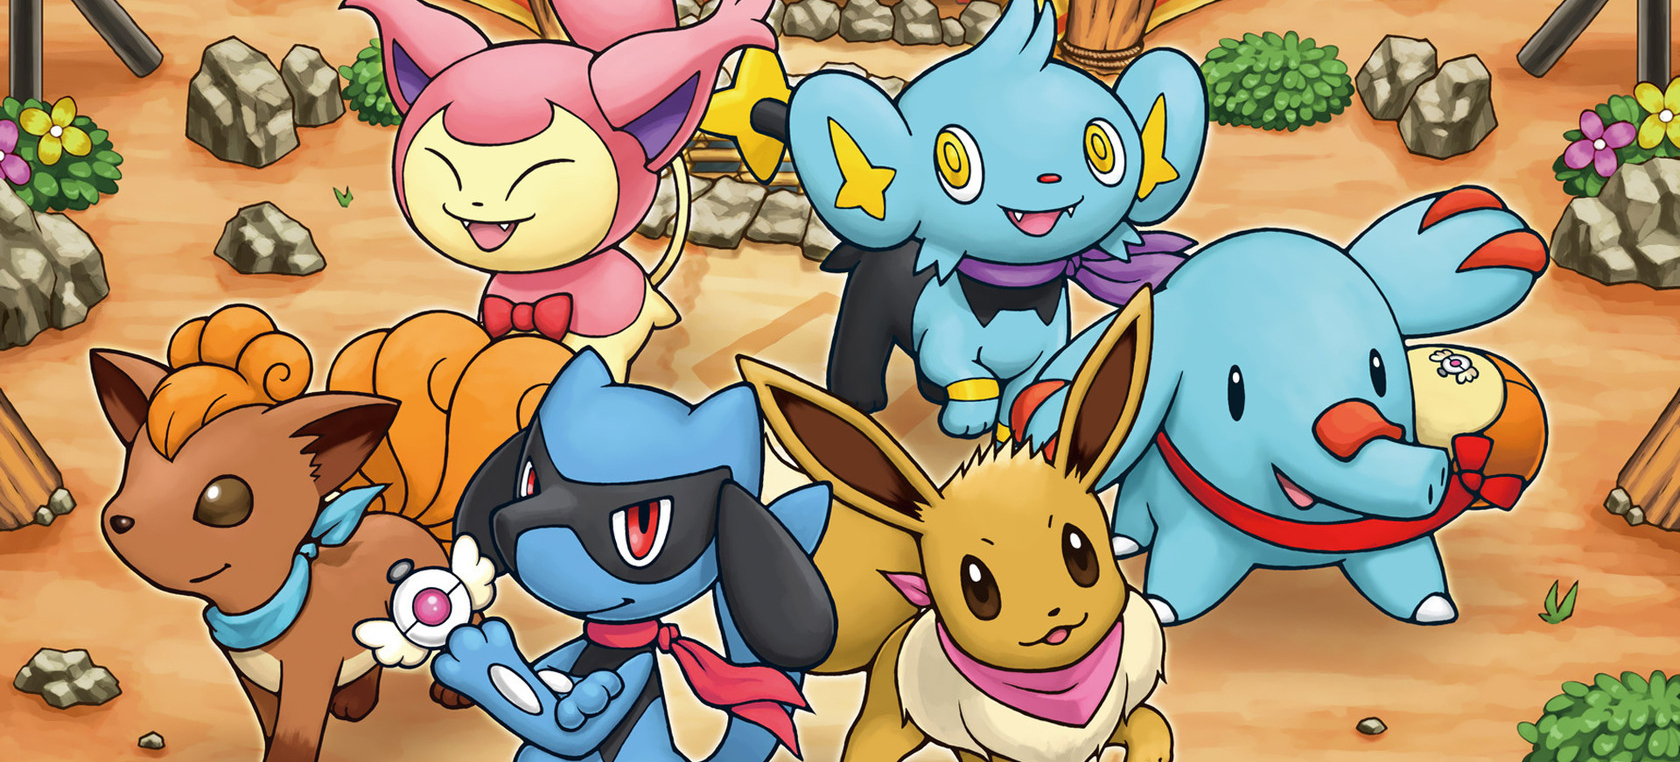 Pokémon Super Mystery Dungeon aangekondigd voor 2016